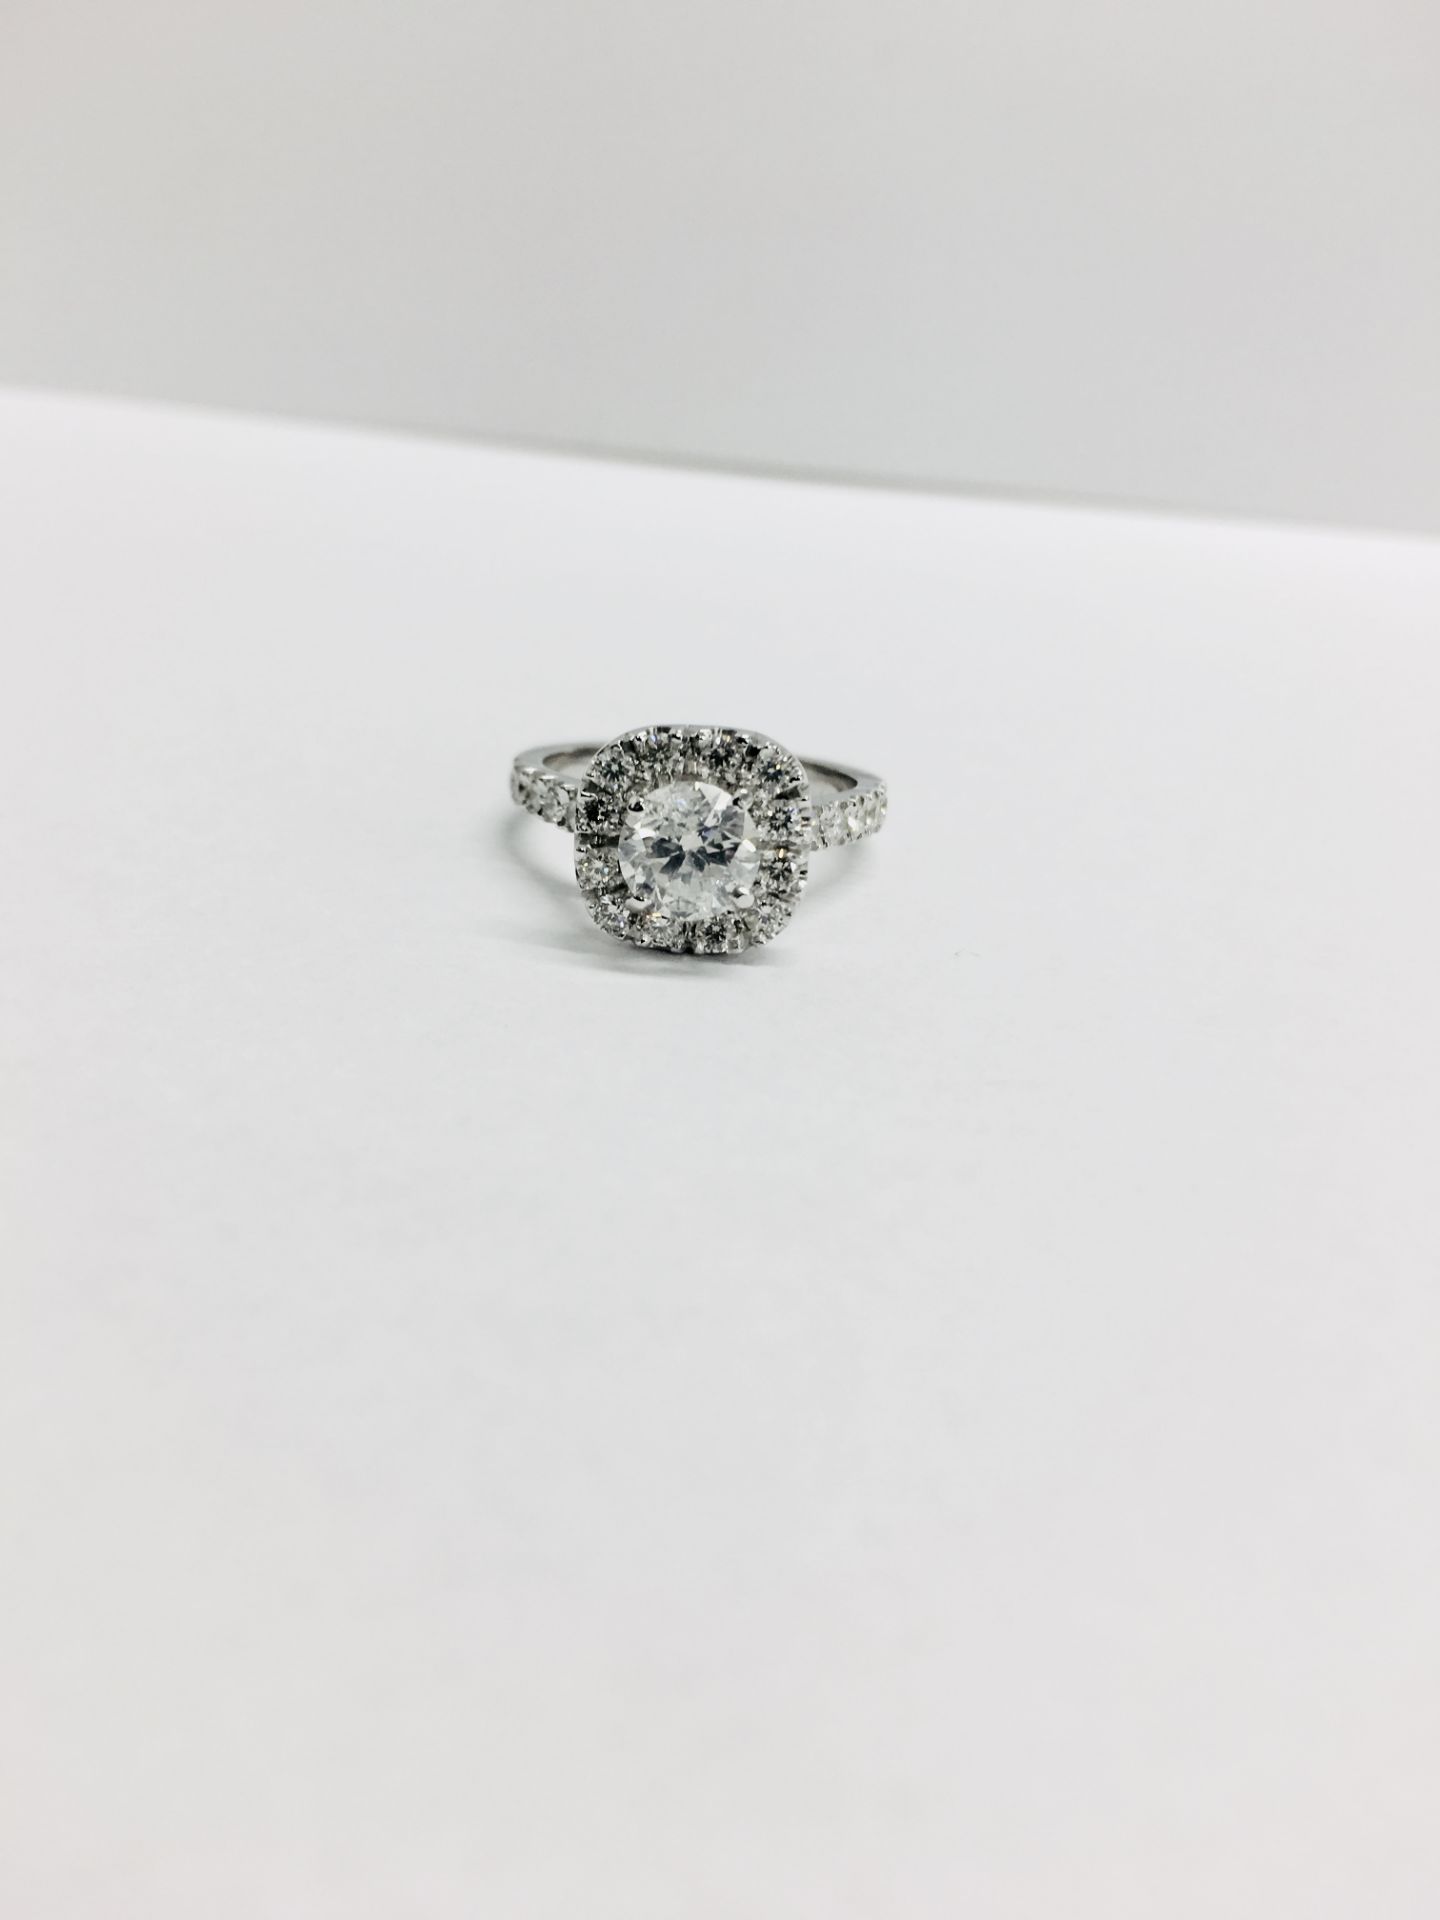 18ct white gold Halo style Diamond ring,0.50ct brilliant cut centre,h colour vs clarity,0.25ct